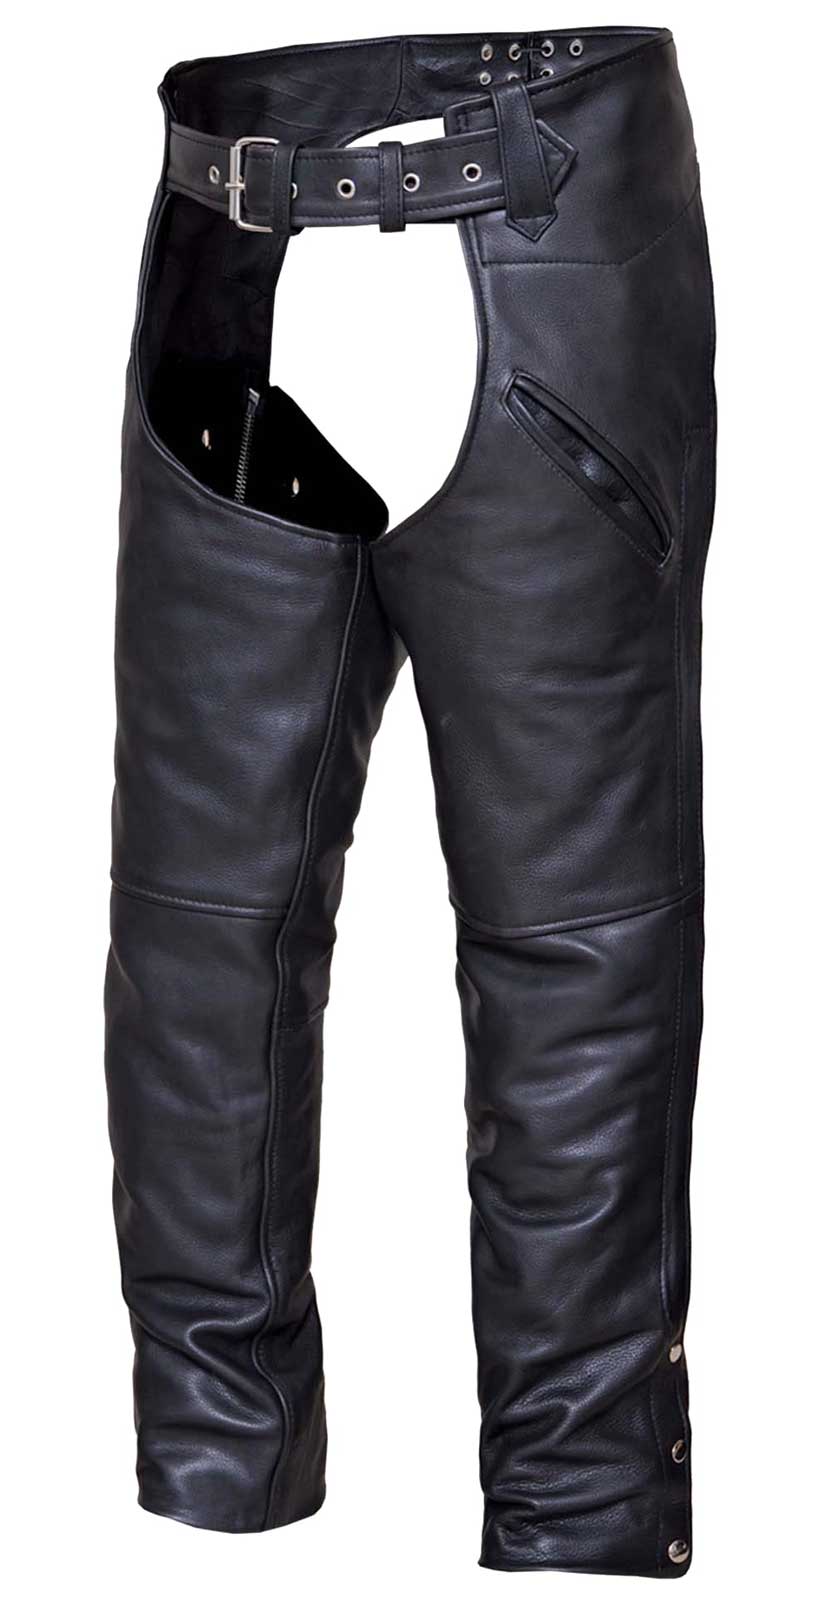 UNIK Men's Deep Pocket Adjustable Buffalo Leather Motorcycle Chaps